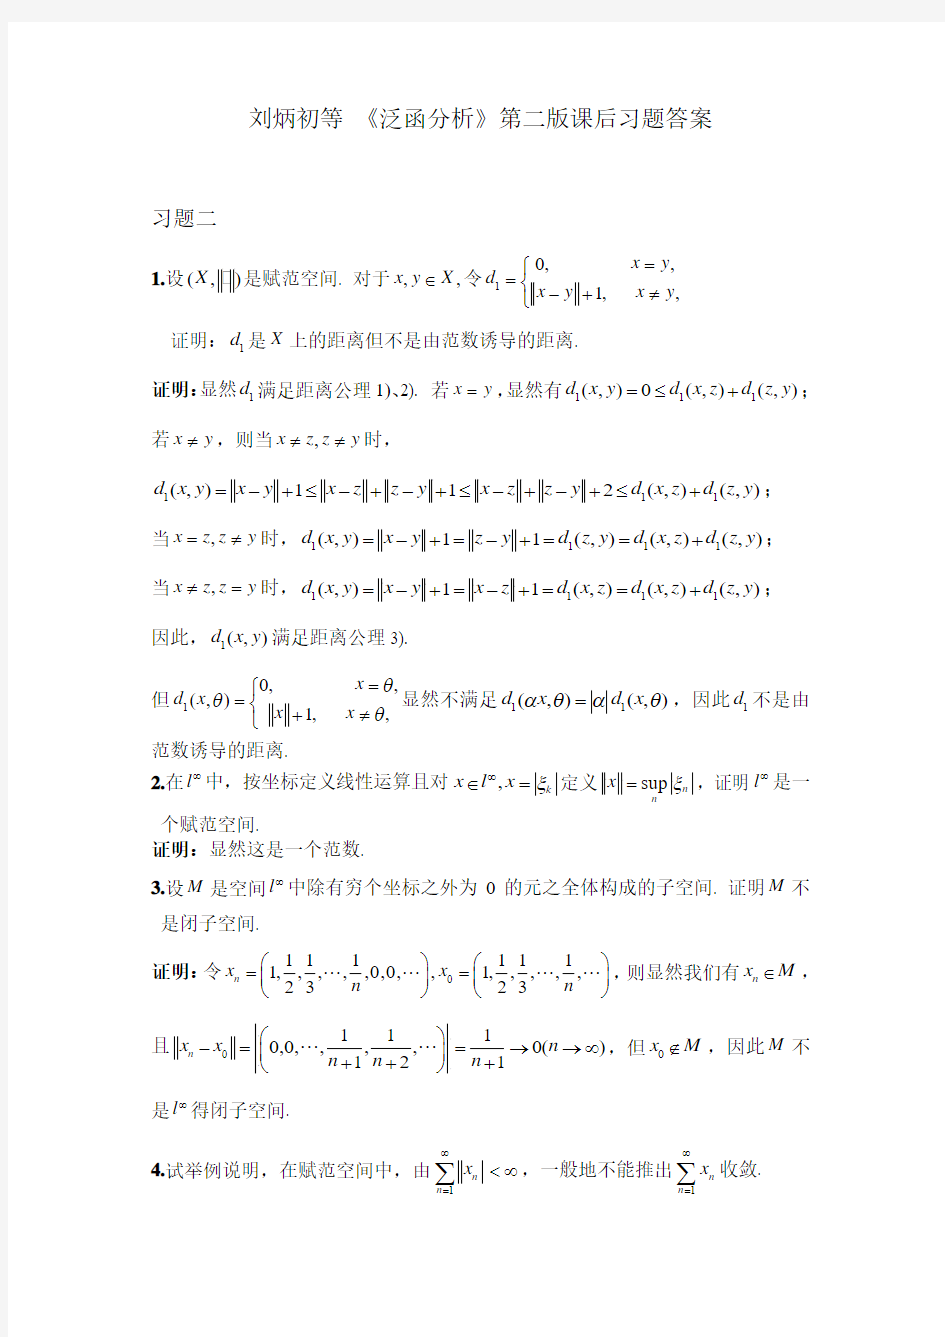 刘炳初等 《泛函分析》第二版课后习题答案